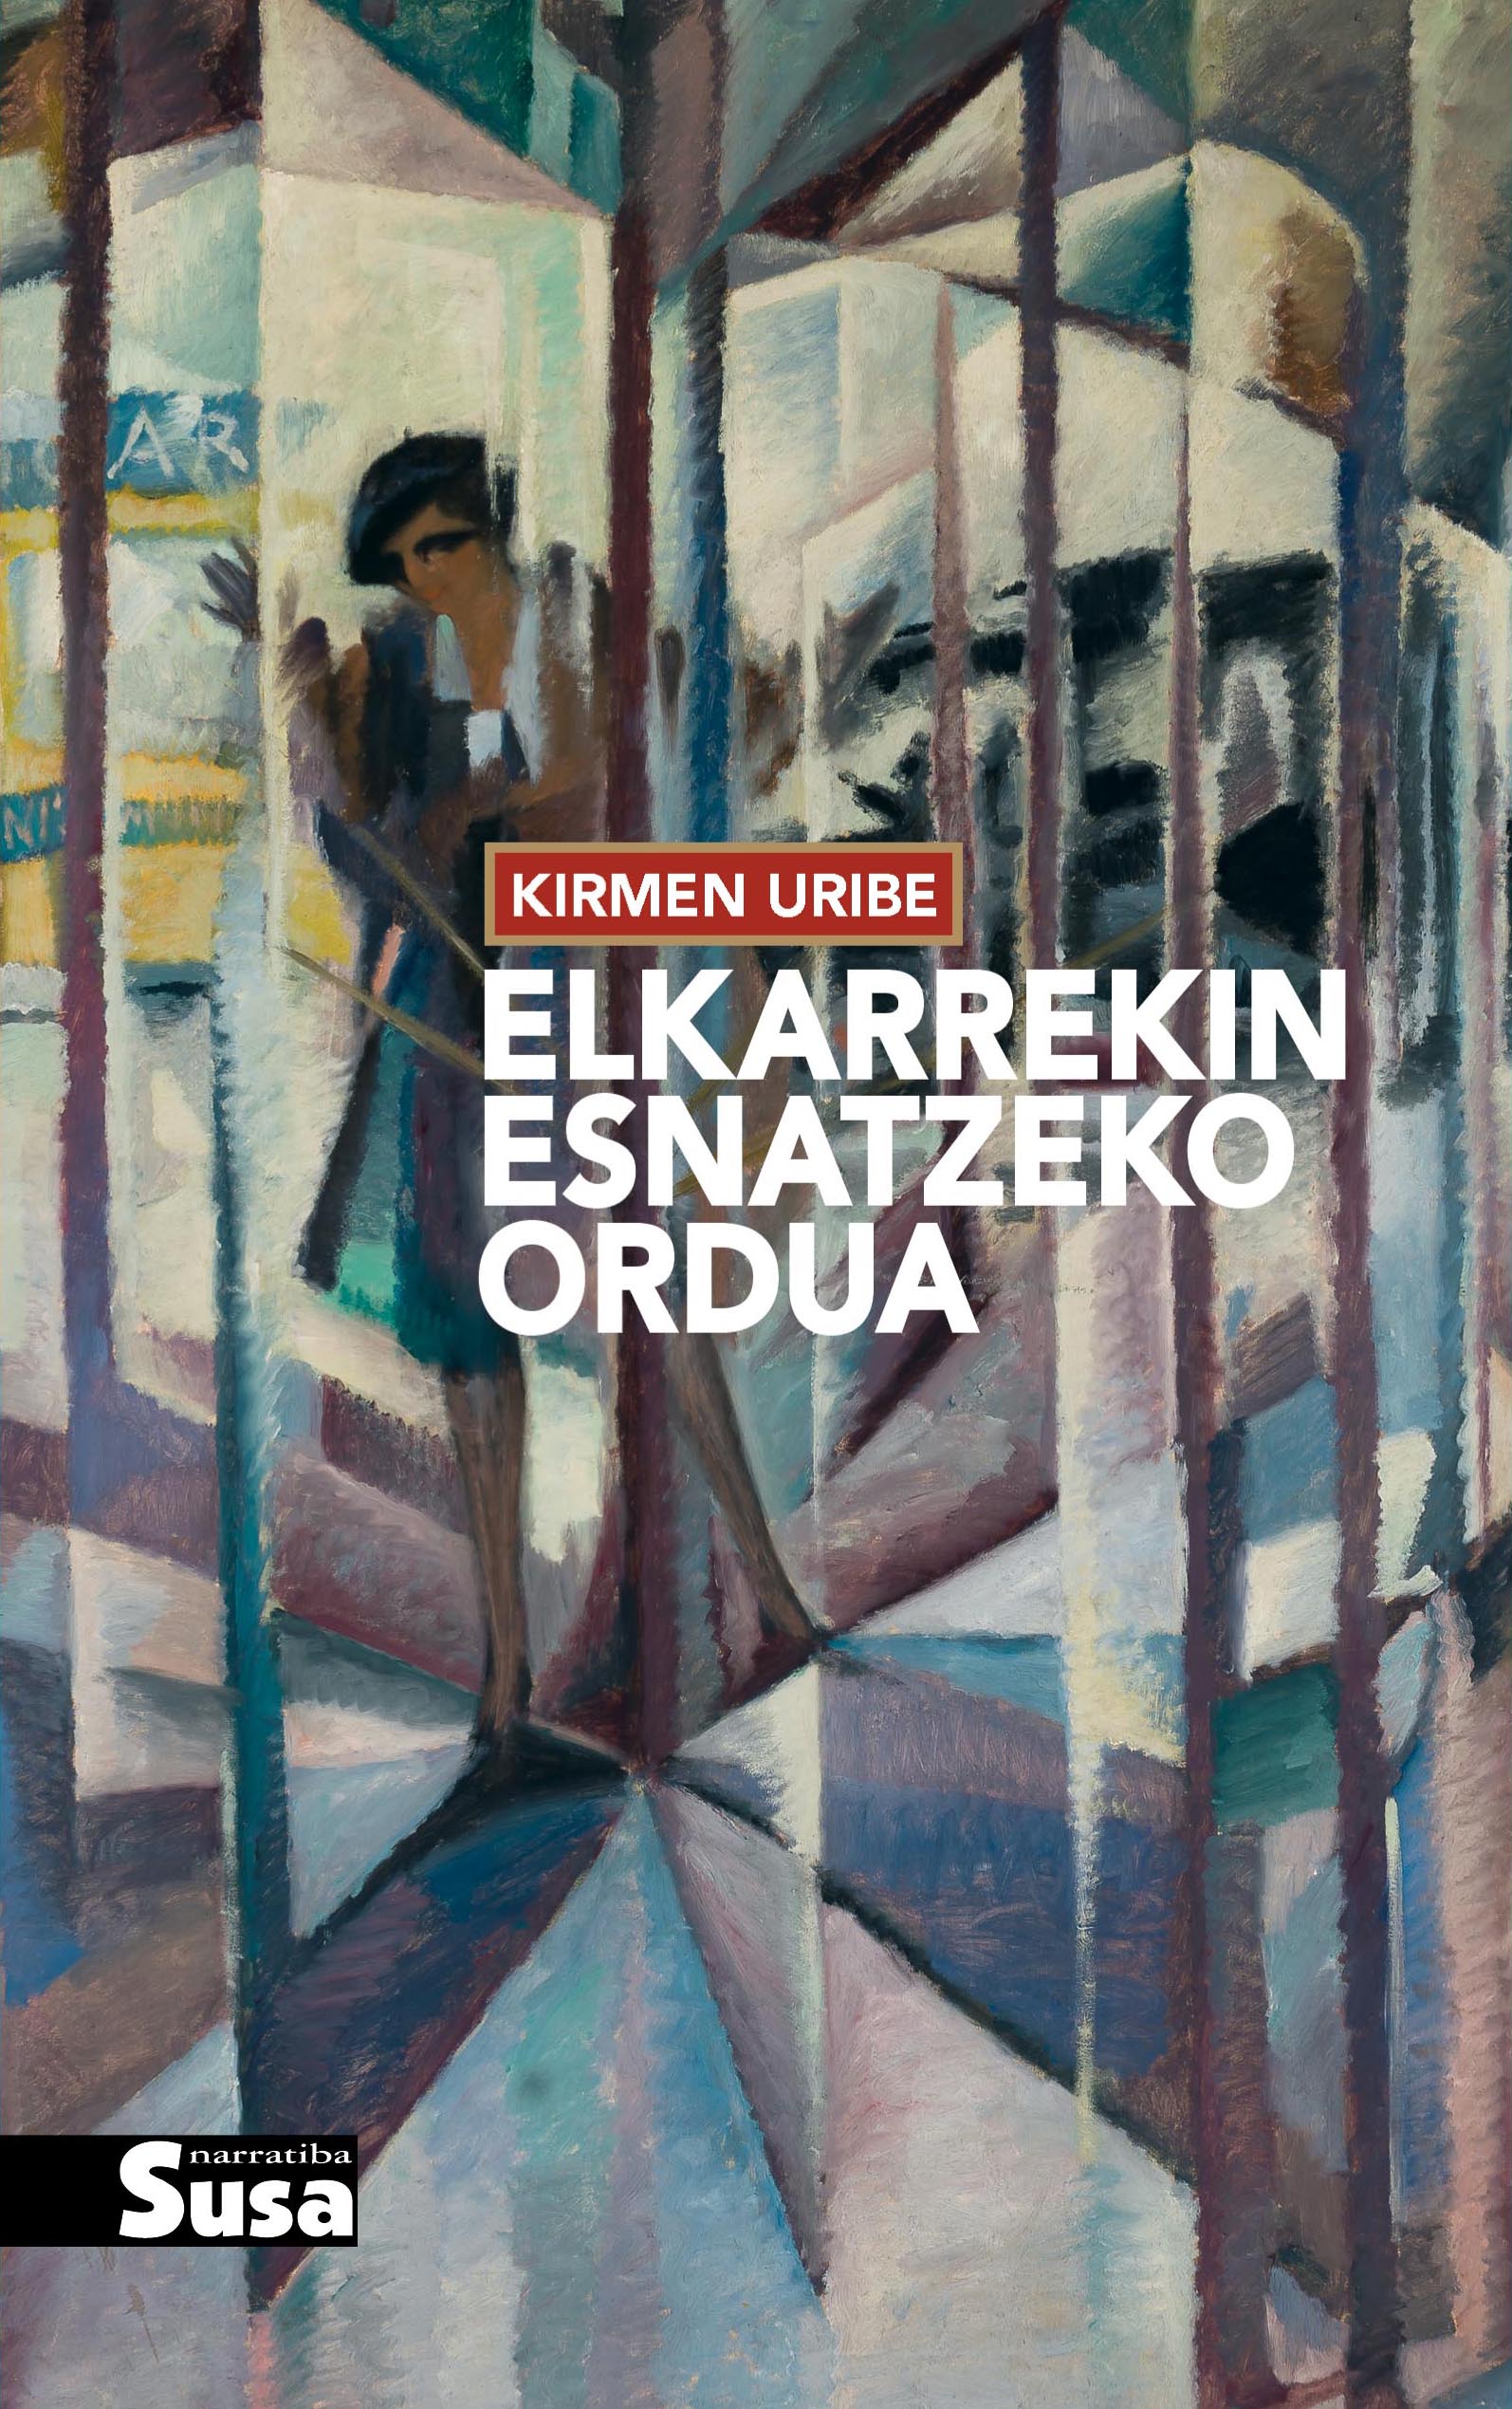 Elkarrekin esnatzeko ordua (Paperback, Euskara language, 2016, Susa)